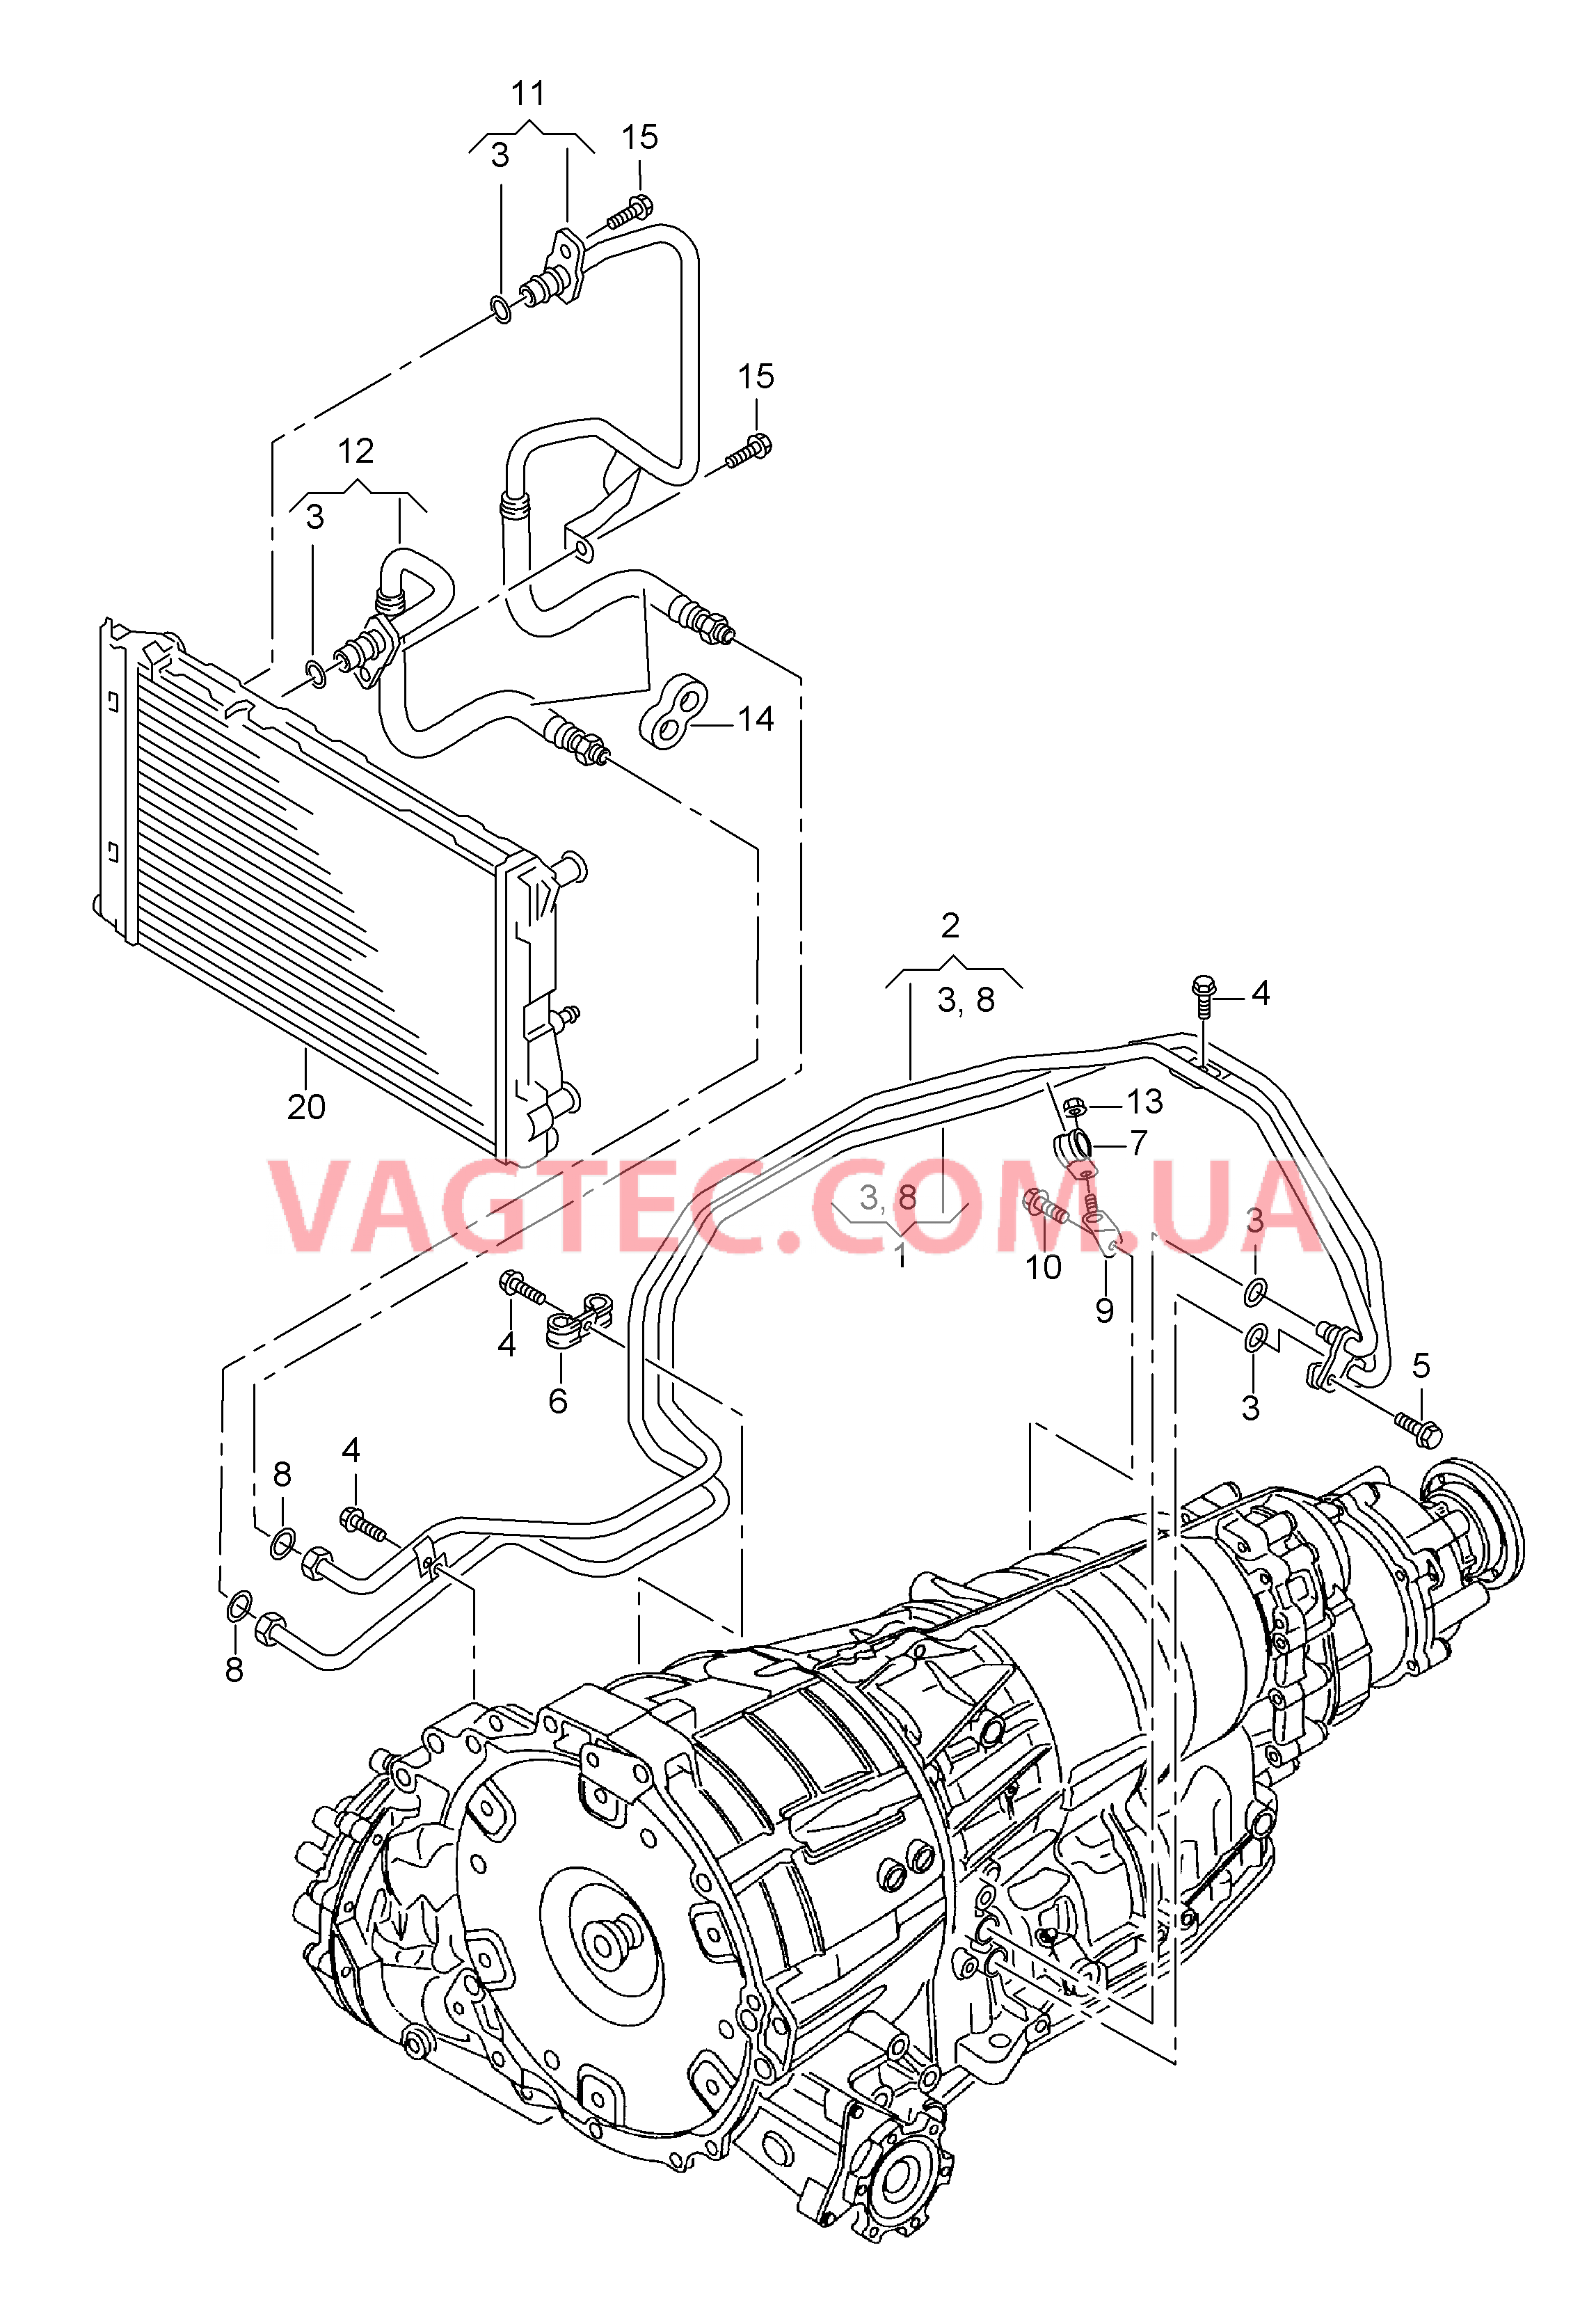 Напорный маслопровод для охлаждения масла коробки передач  8-ступенчатая АКП для а/м с гибридным приводом  для AUDI Q5 2014